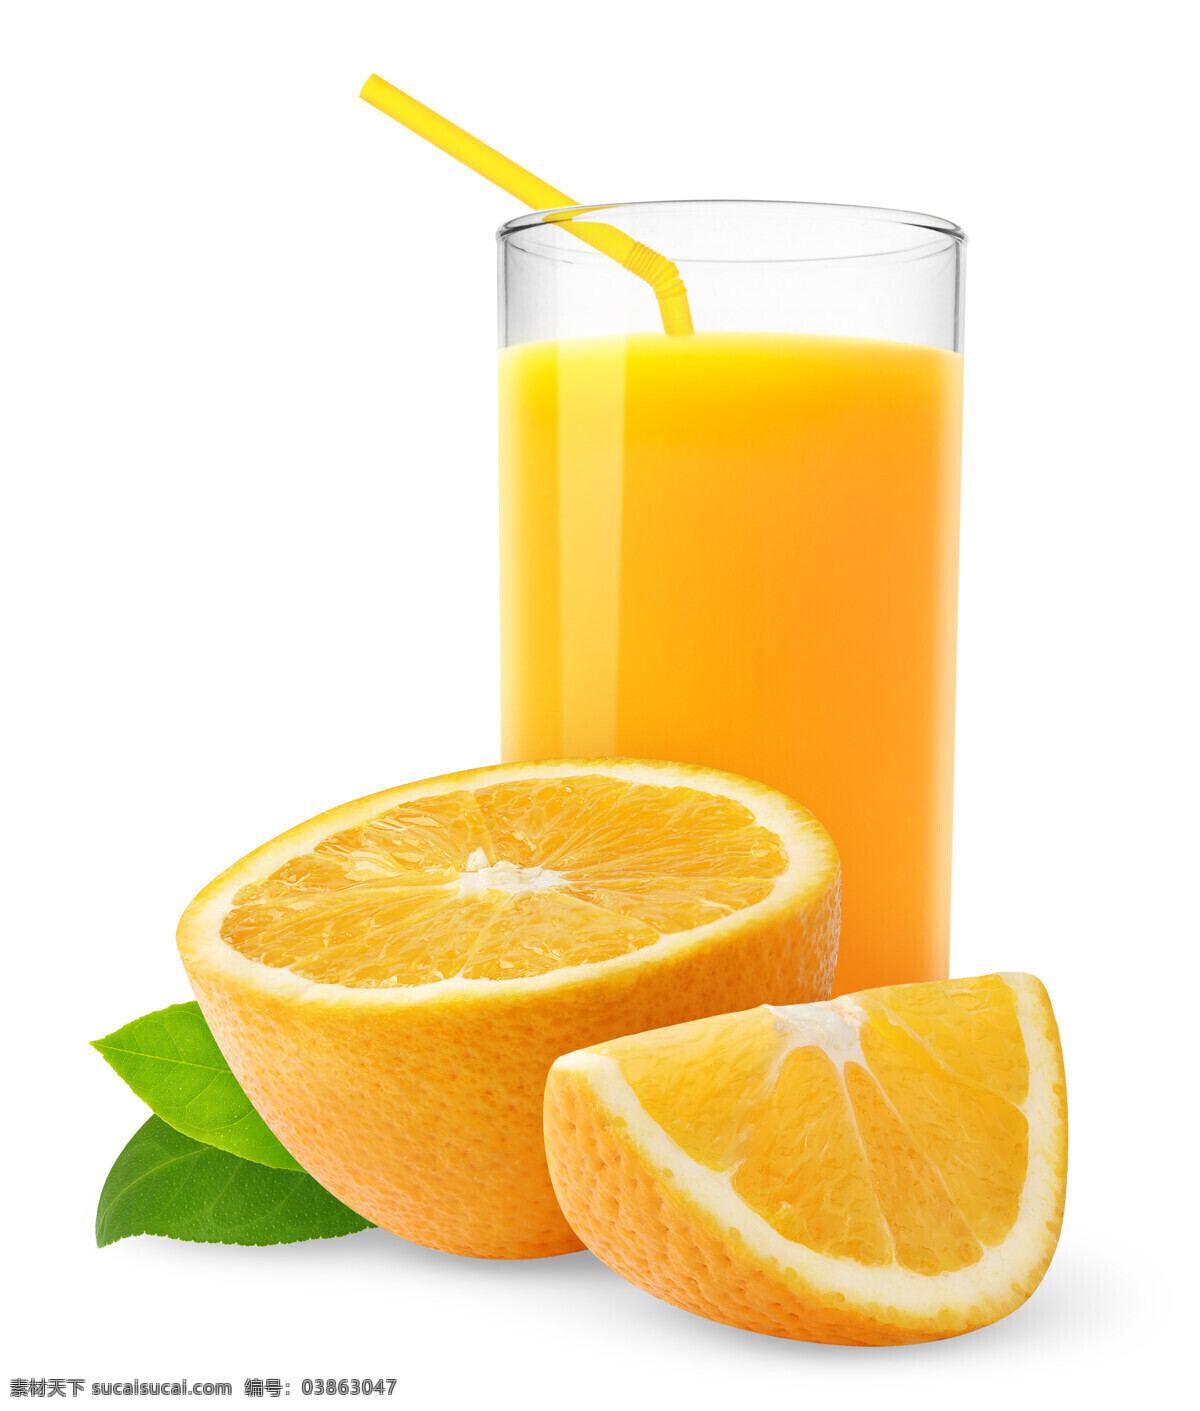 唯美 美味 饮料 饮品 果汁 新鲜 鲜果汁 橙汁 鲜橙汁 美味鲜橙汁 餐饮美食 饮料酒水